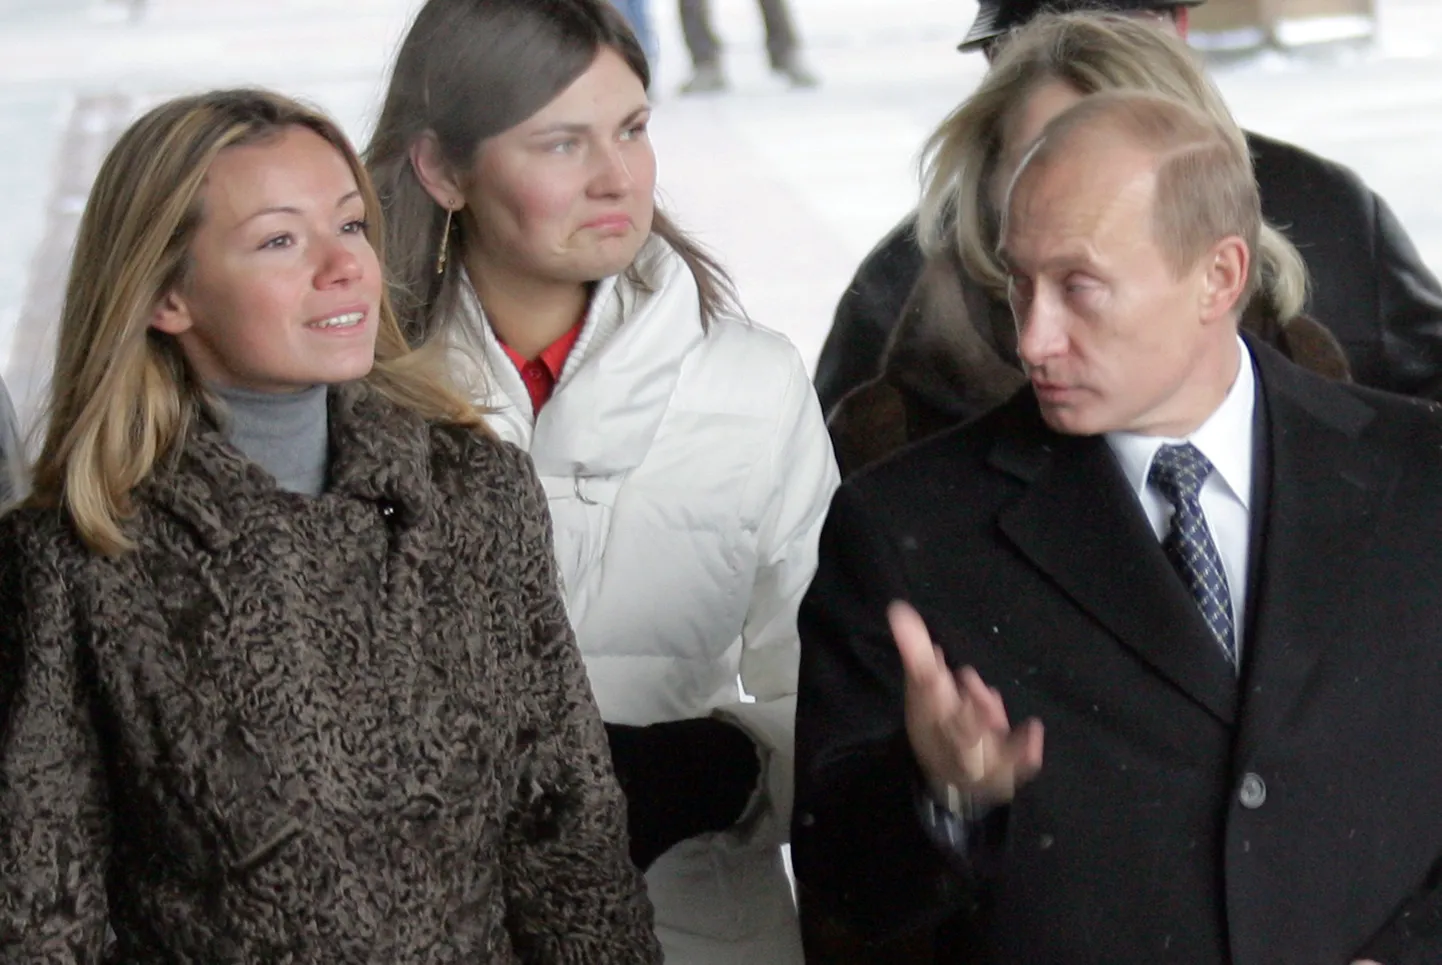 15 aastat vana pilt sellest, kuidas Vladimir Putin tütar Maria seltsis valima suundub.